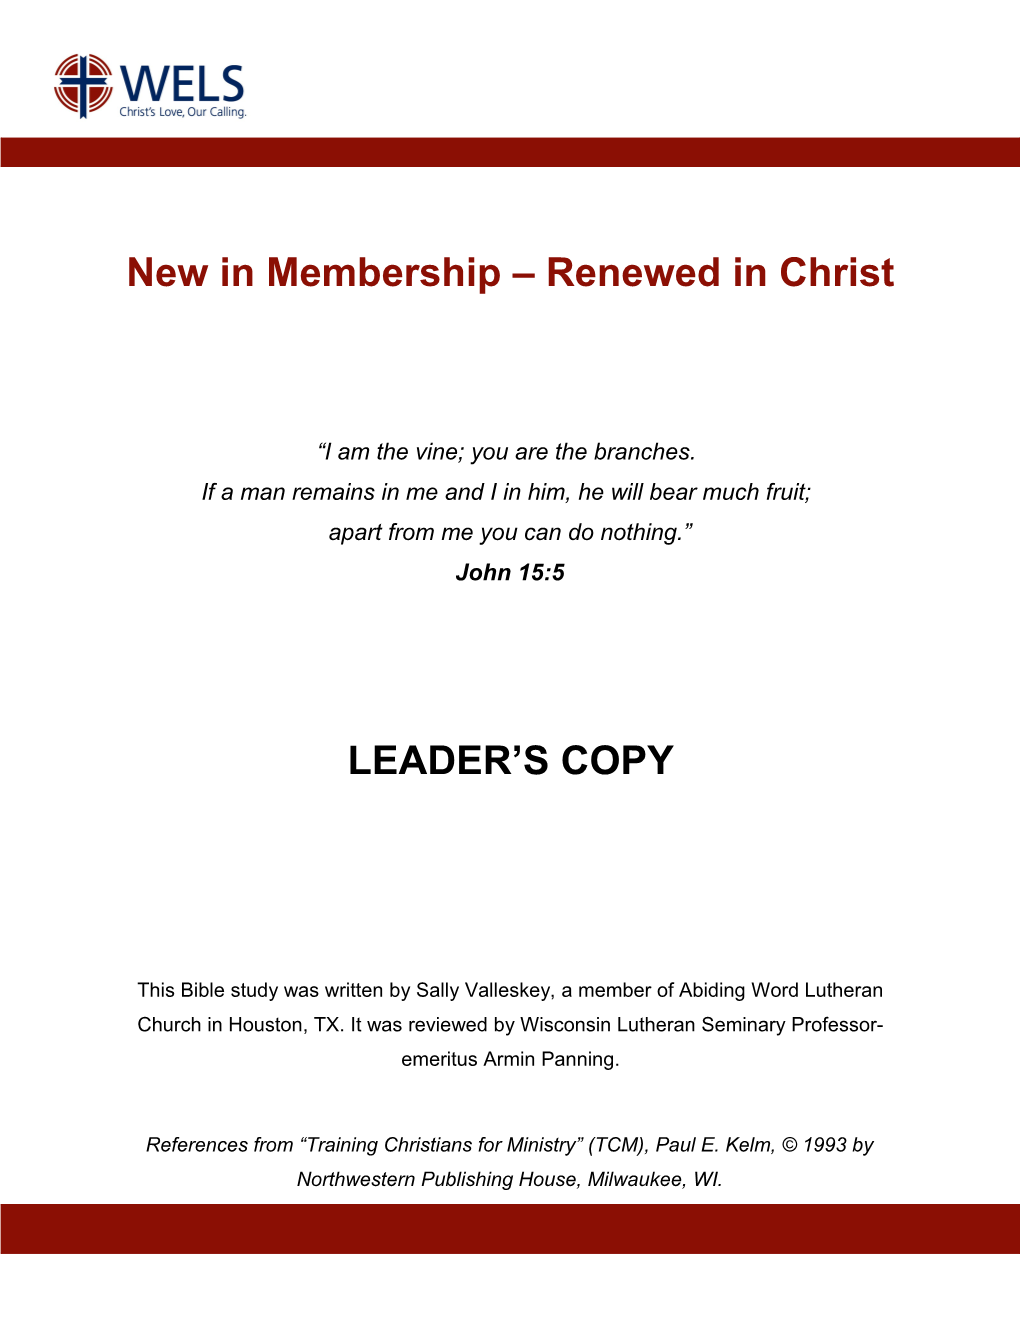 New in Membership Renewed in Christ